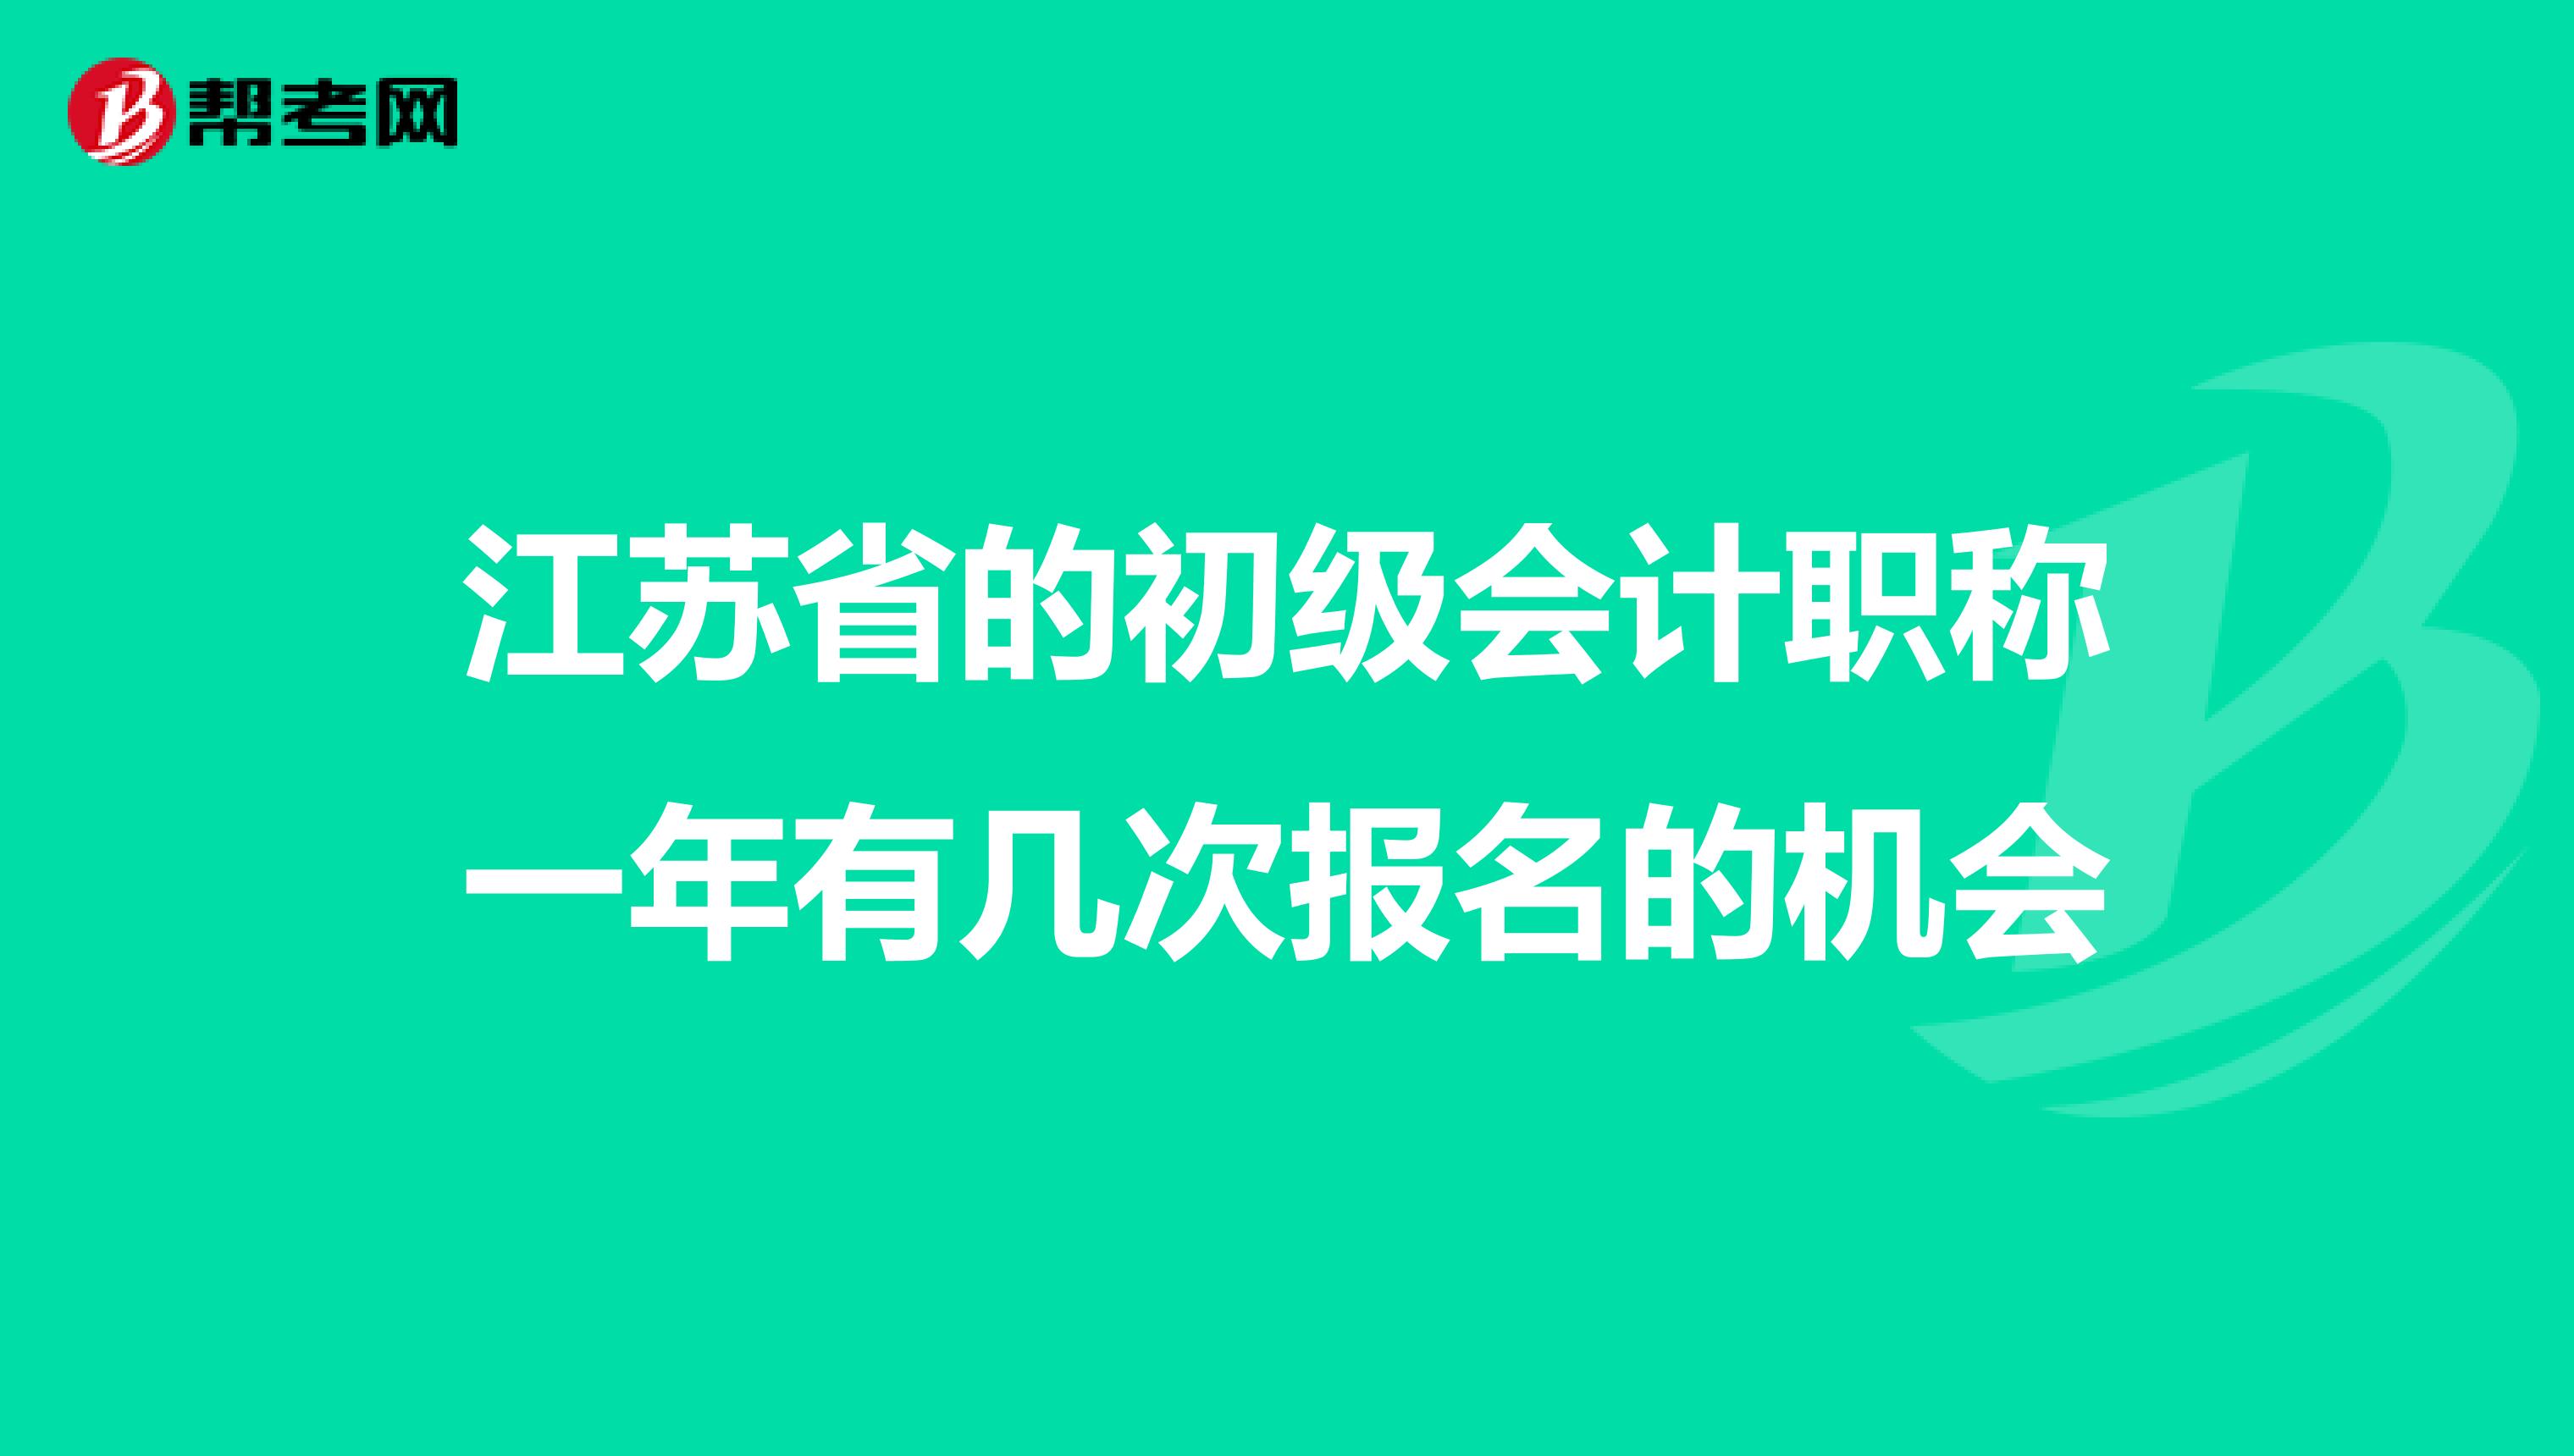 江苏省的初级会计职称一年有几次报名的机会